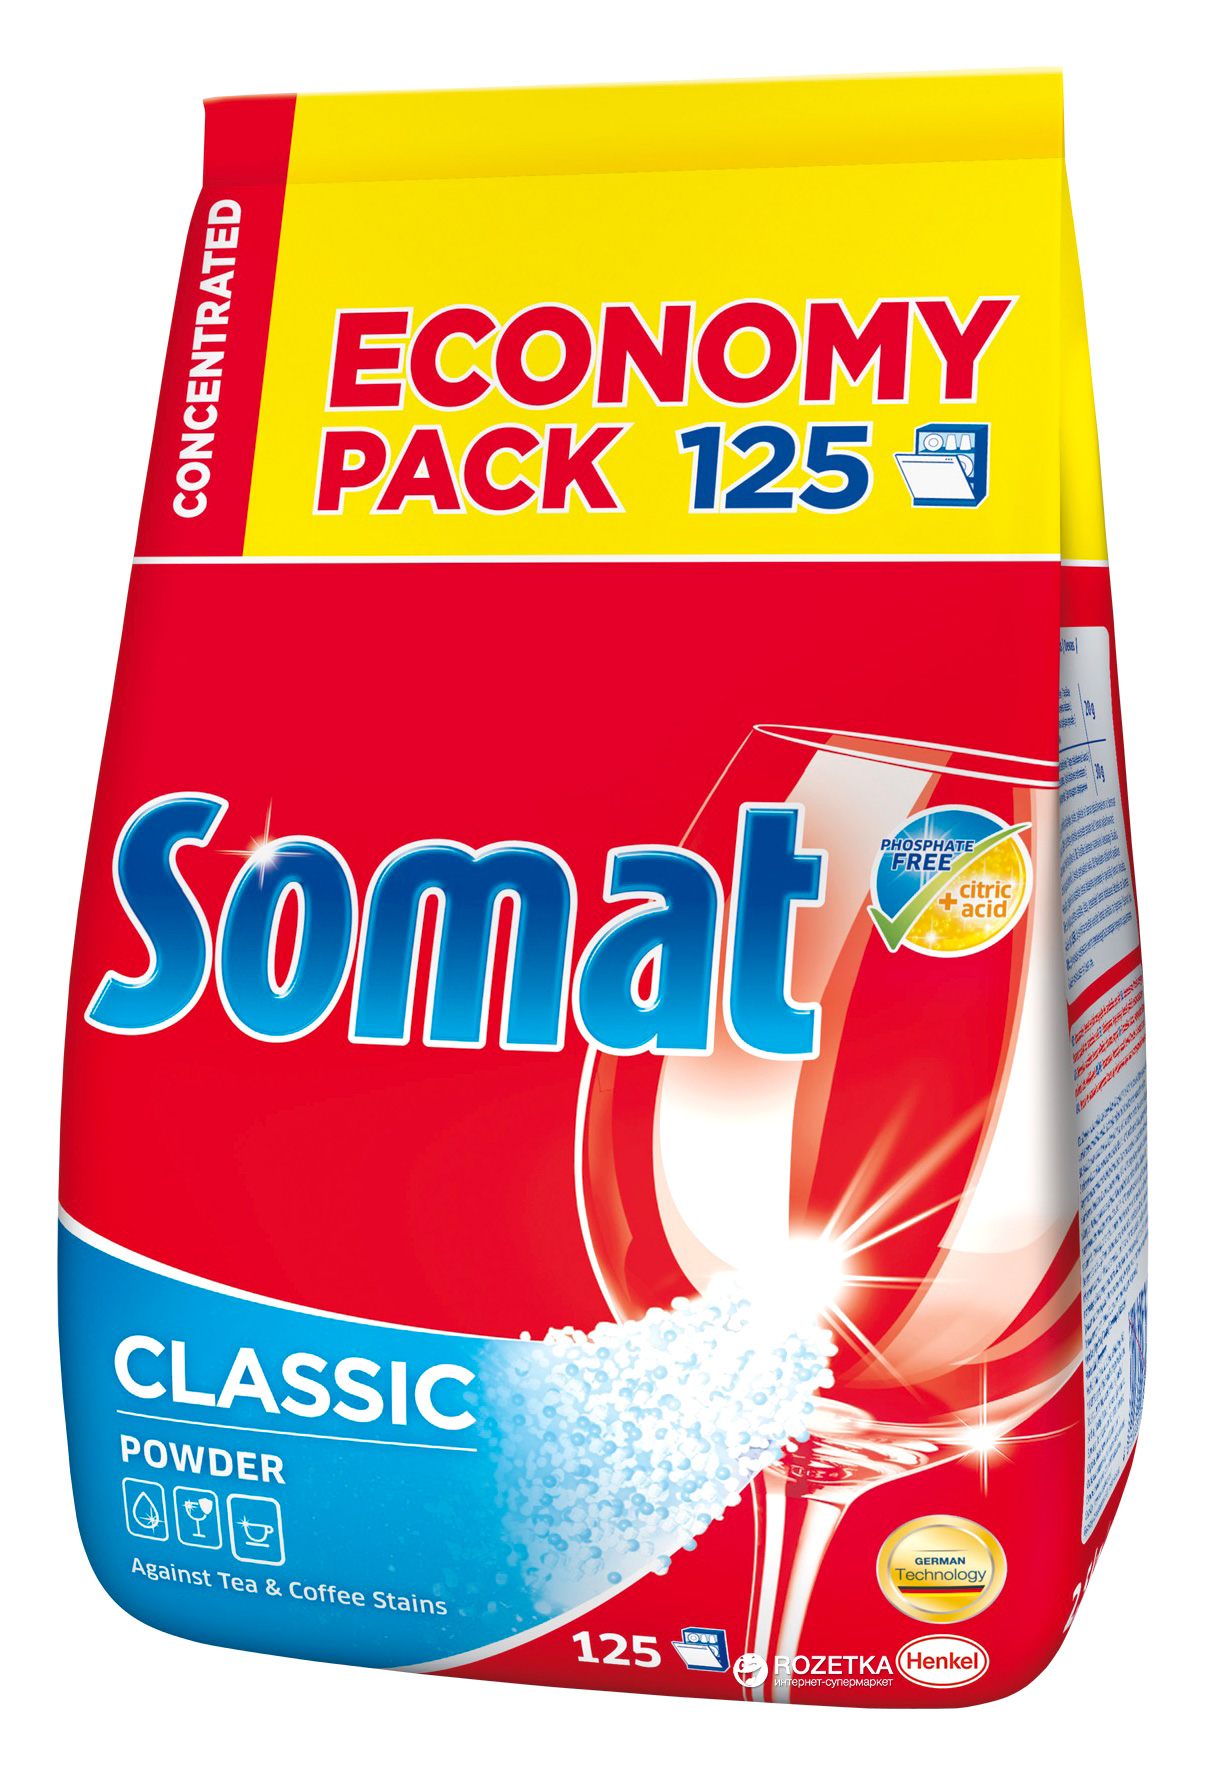 Порошок для посудомоечной машины 3 кг. Порошок для посудомоечных машин Somat. Порошок для ПММ Somat 3кг. Порошок Сомат для посудомоечной машины 3 кг. Порошок для посудомоечных машин Somat Классик.